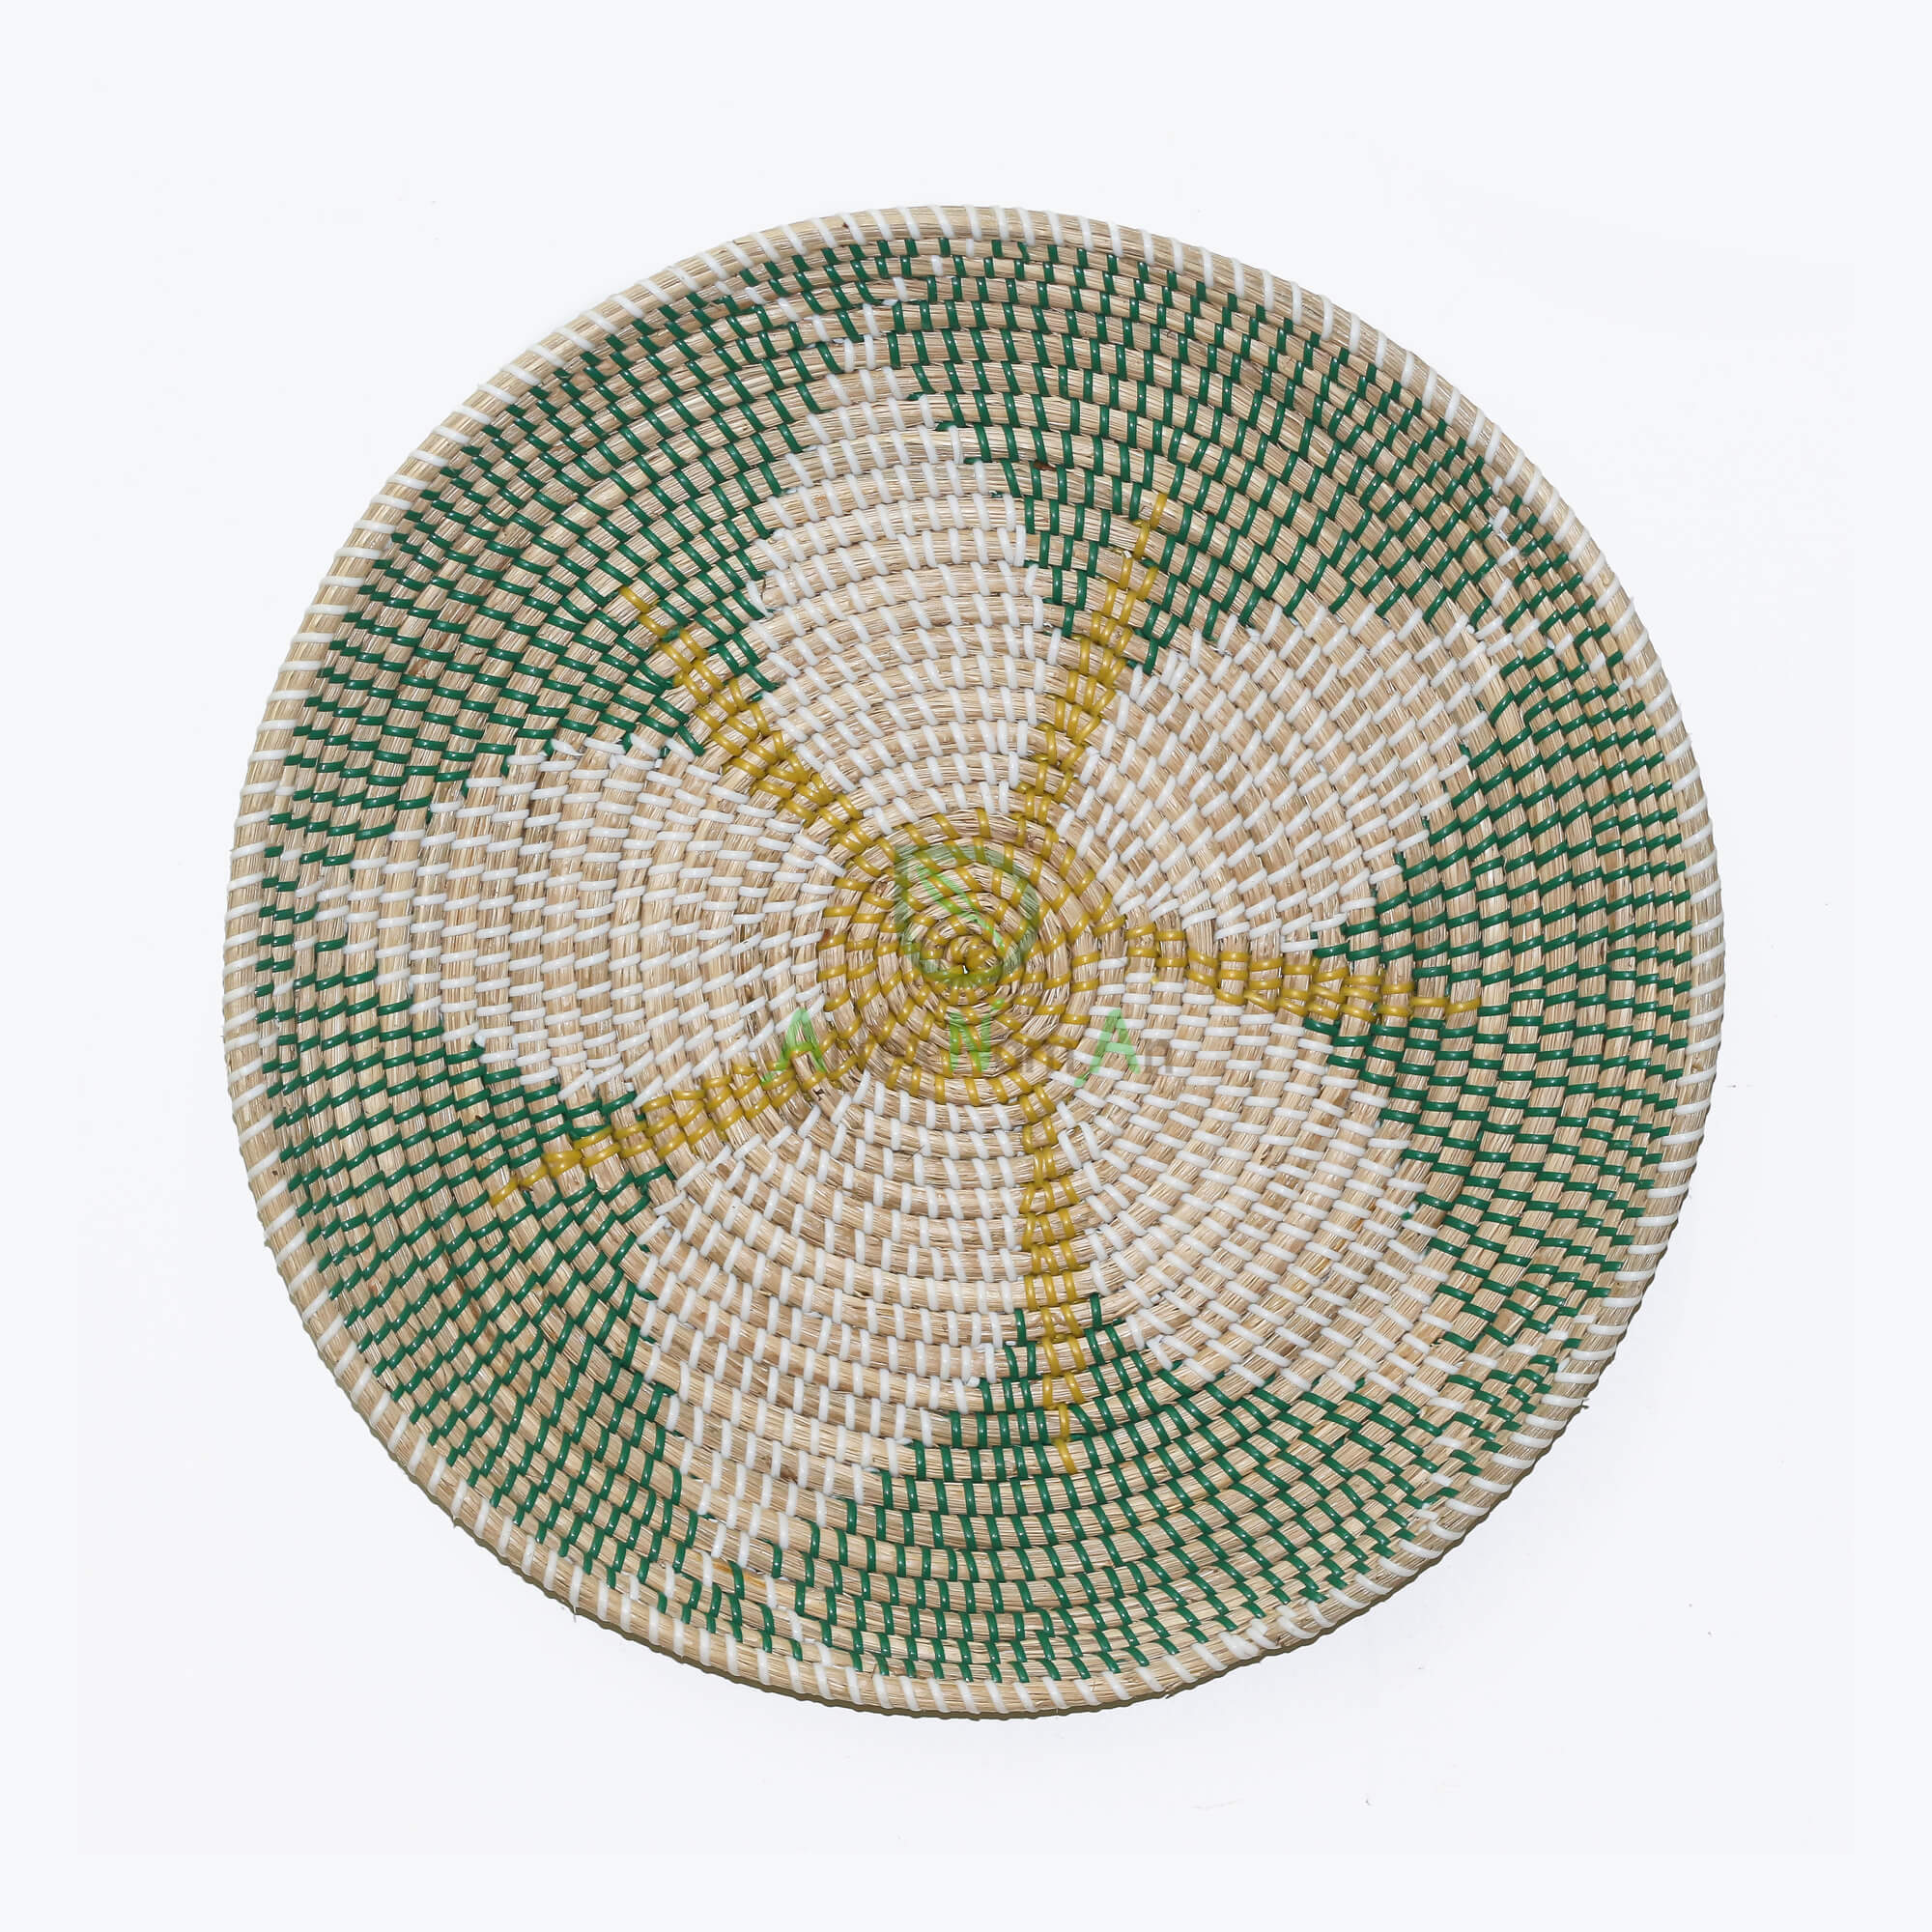 Handicraft Seagrass Boho Decor Basket Also Bohemian Plate For Home Decor